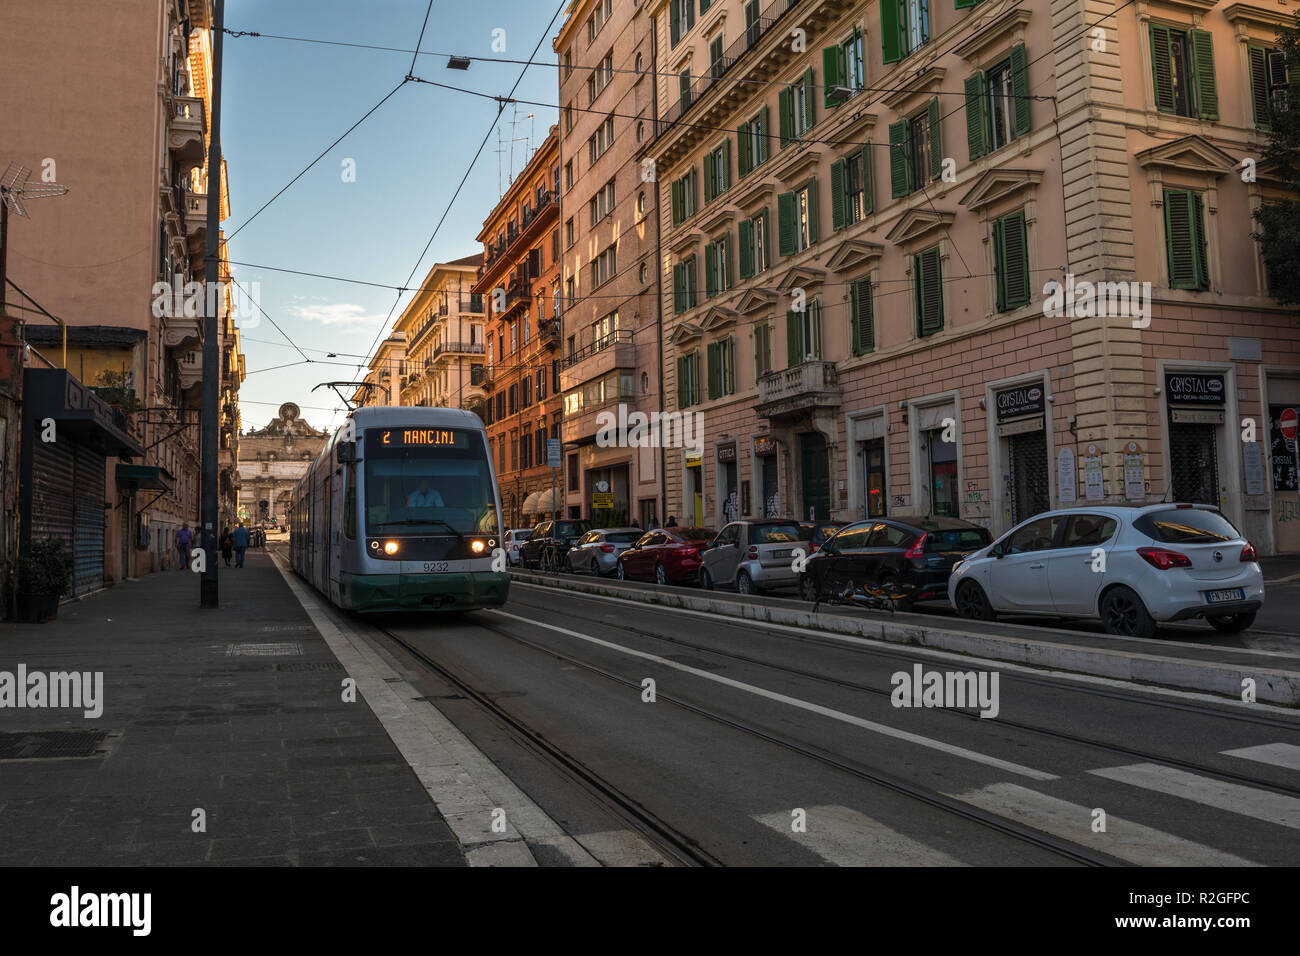 11/09/2018 - Rome, Italie : Dimanche après-midi dans le centre-ville, route de transport avec ATAC menant à Piazzale Flaminio et Piazza del Popolo. Banque D'Images